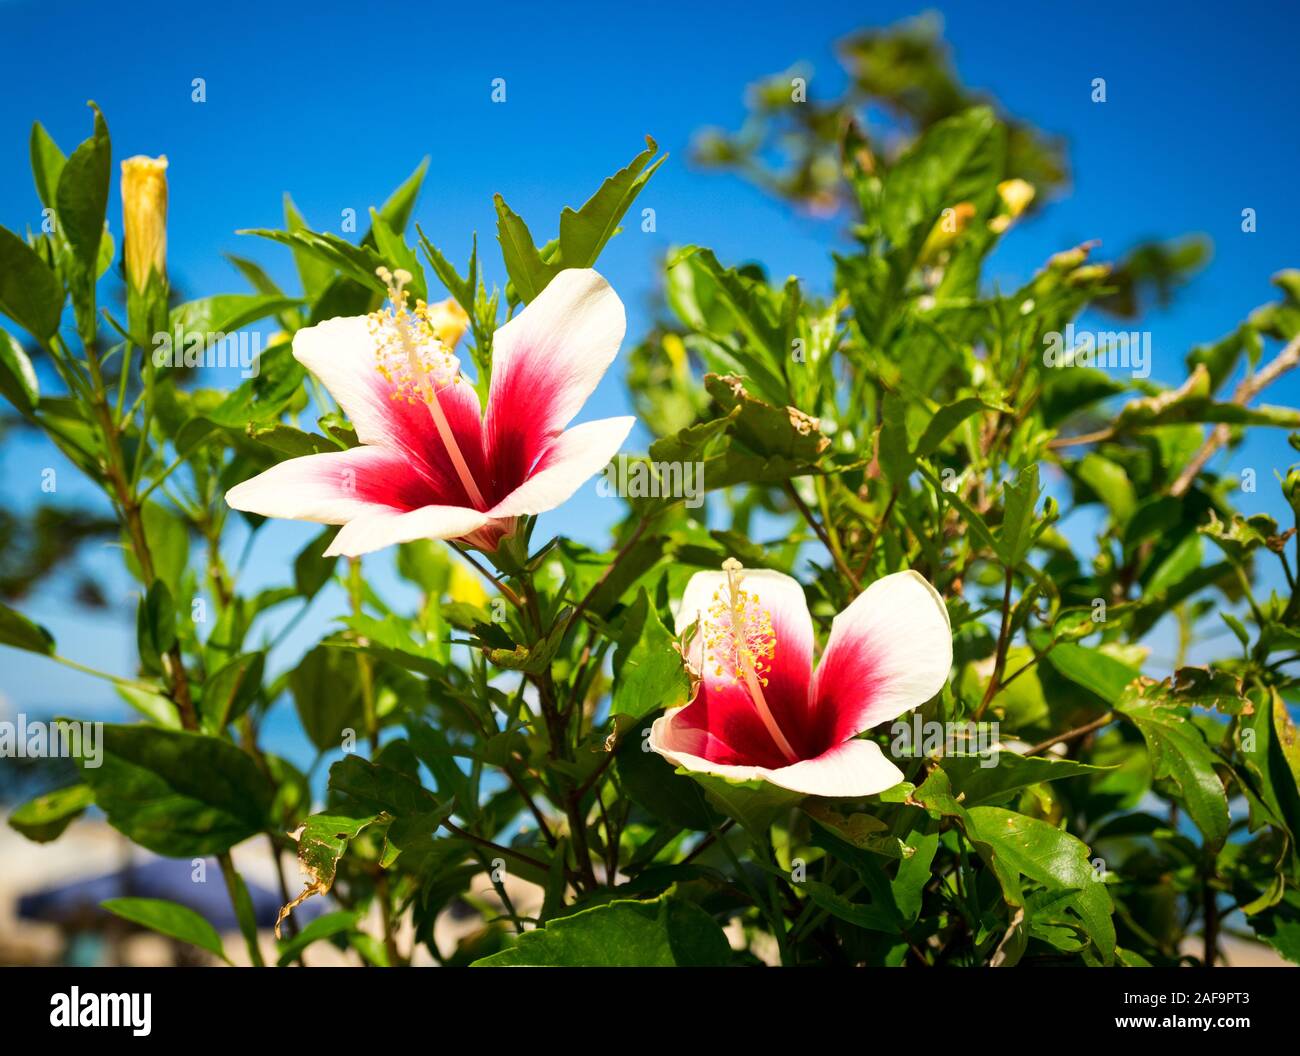 Hibiscus chinois blanc (Hibiscus rosa-sinensis) fleurs aux coeurs rouges, également connu sous le nom d'hibiscus hawaïen ou de palomon rose. Ishigaki, Okinawa, Japon Banque D'Images